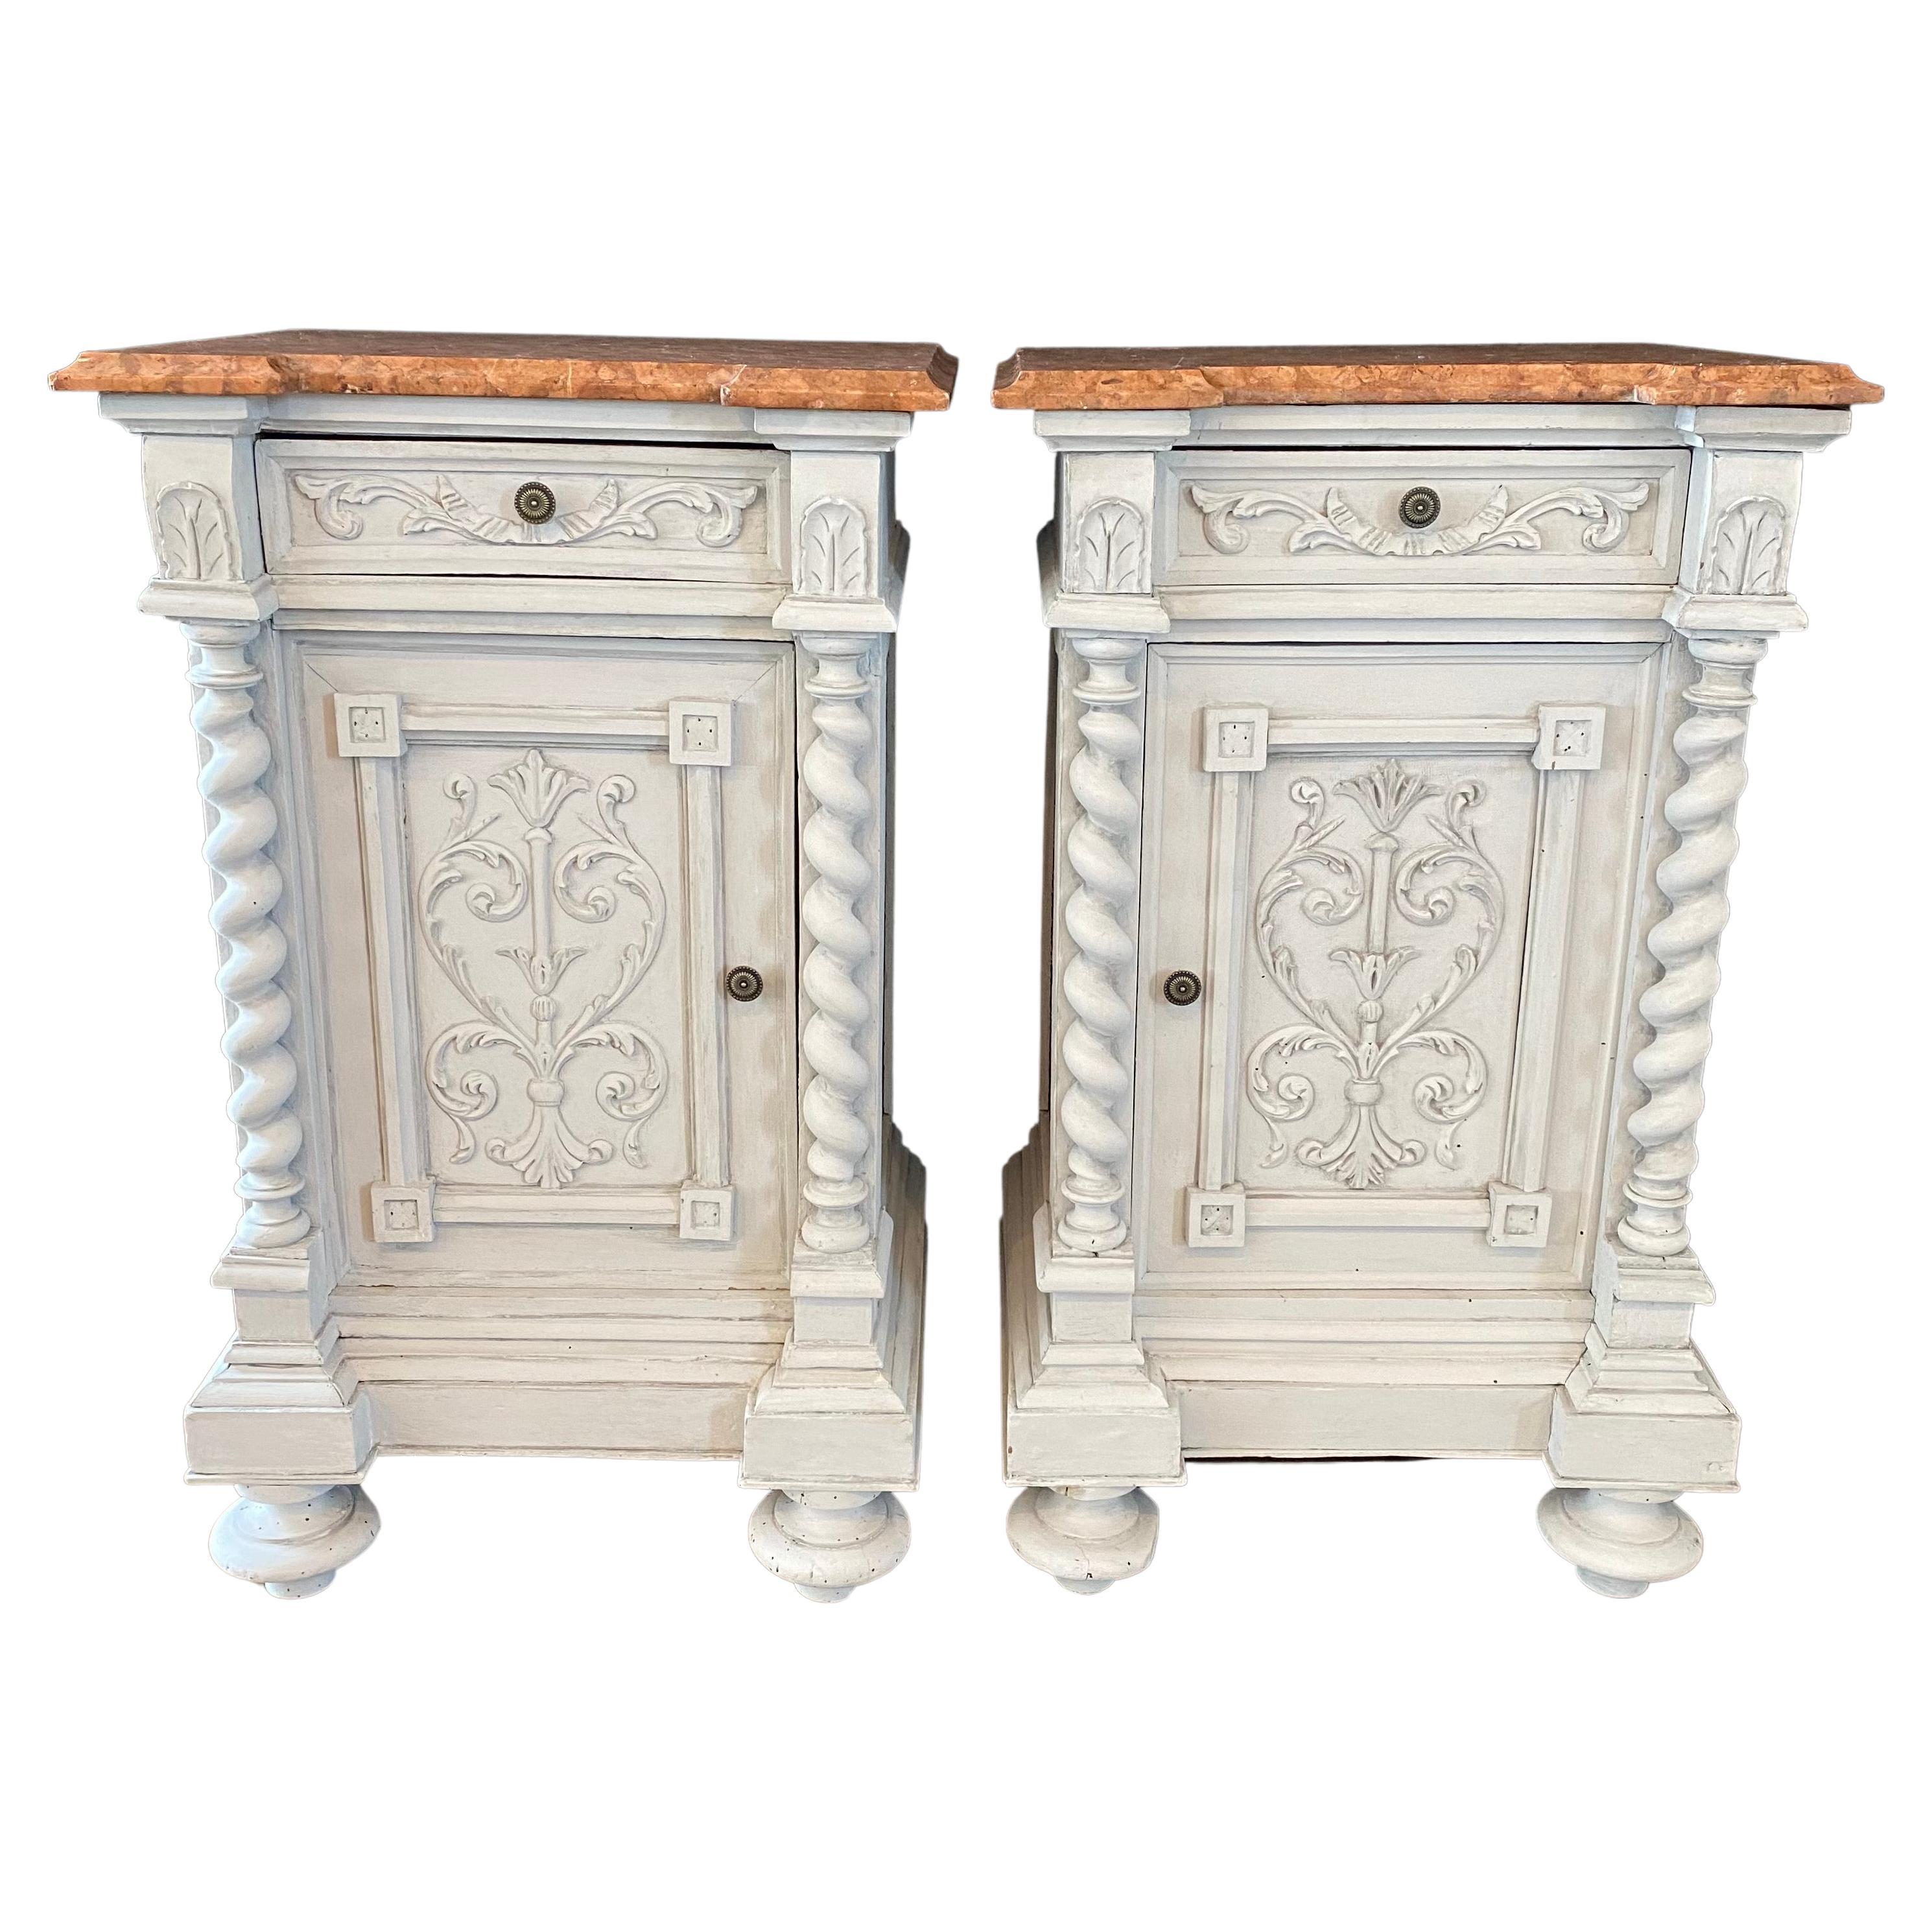 Jolie paire de tables de nuit anciennes baroques italiennes de la Renaissance en forme de torsion d'orge